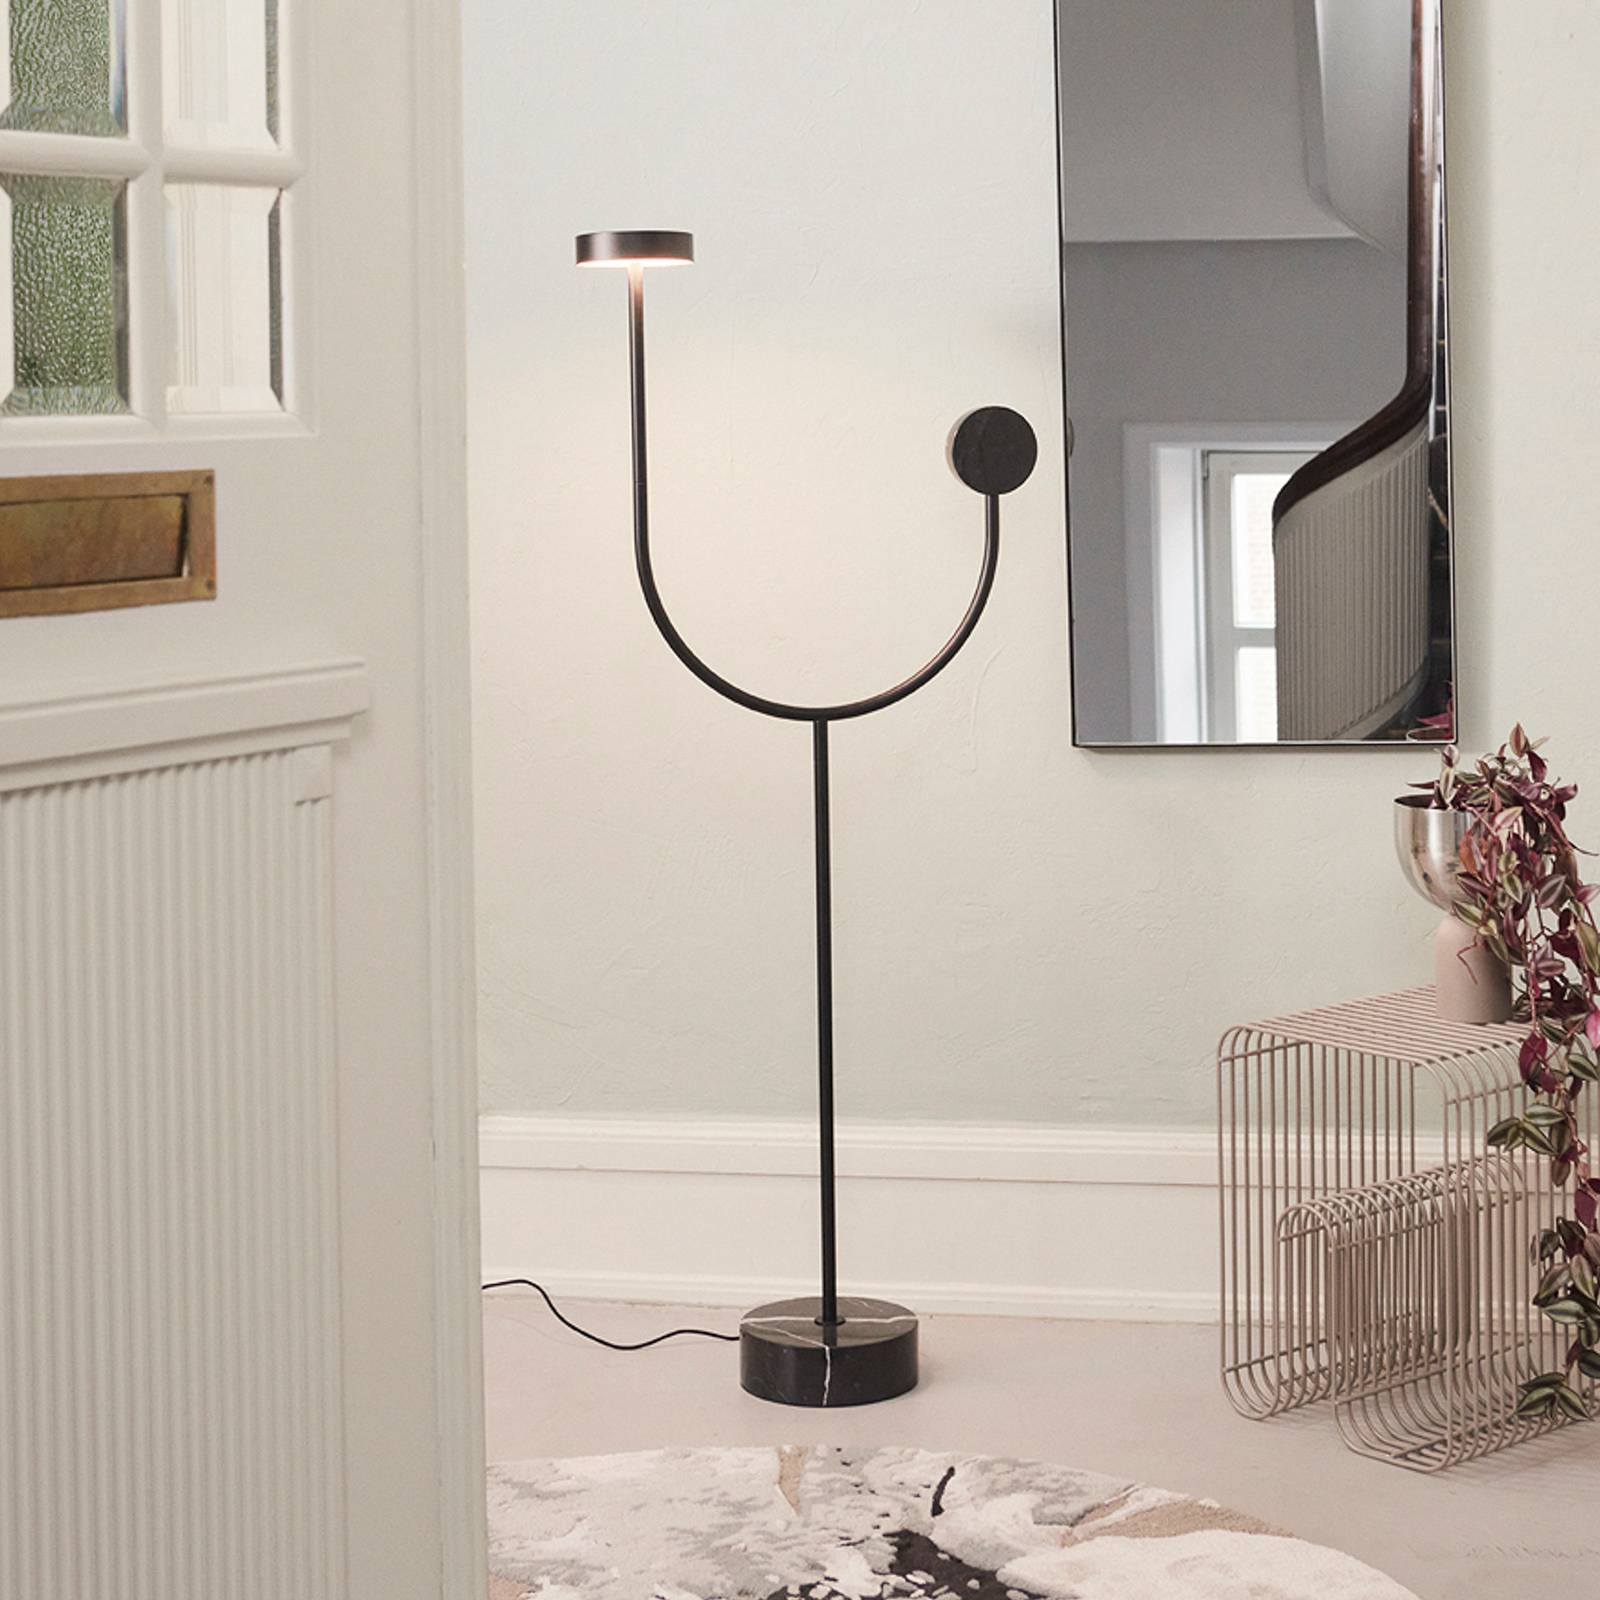 Aytm led állólámpa grasil, fekete, márvány, magasság 127 cm